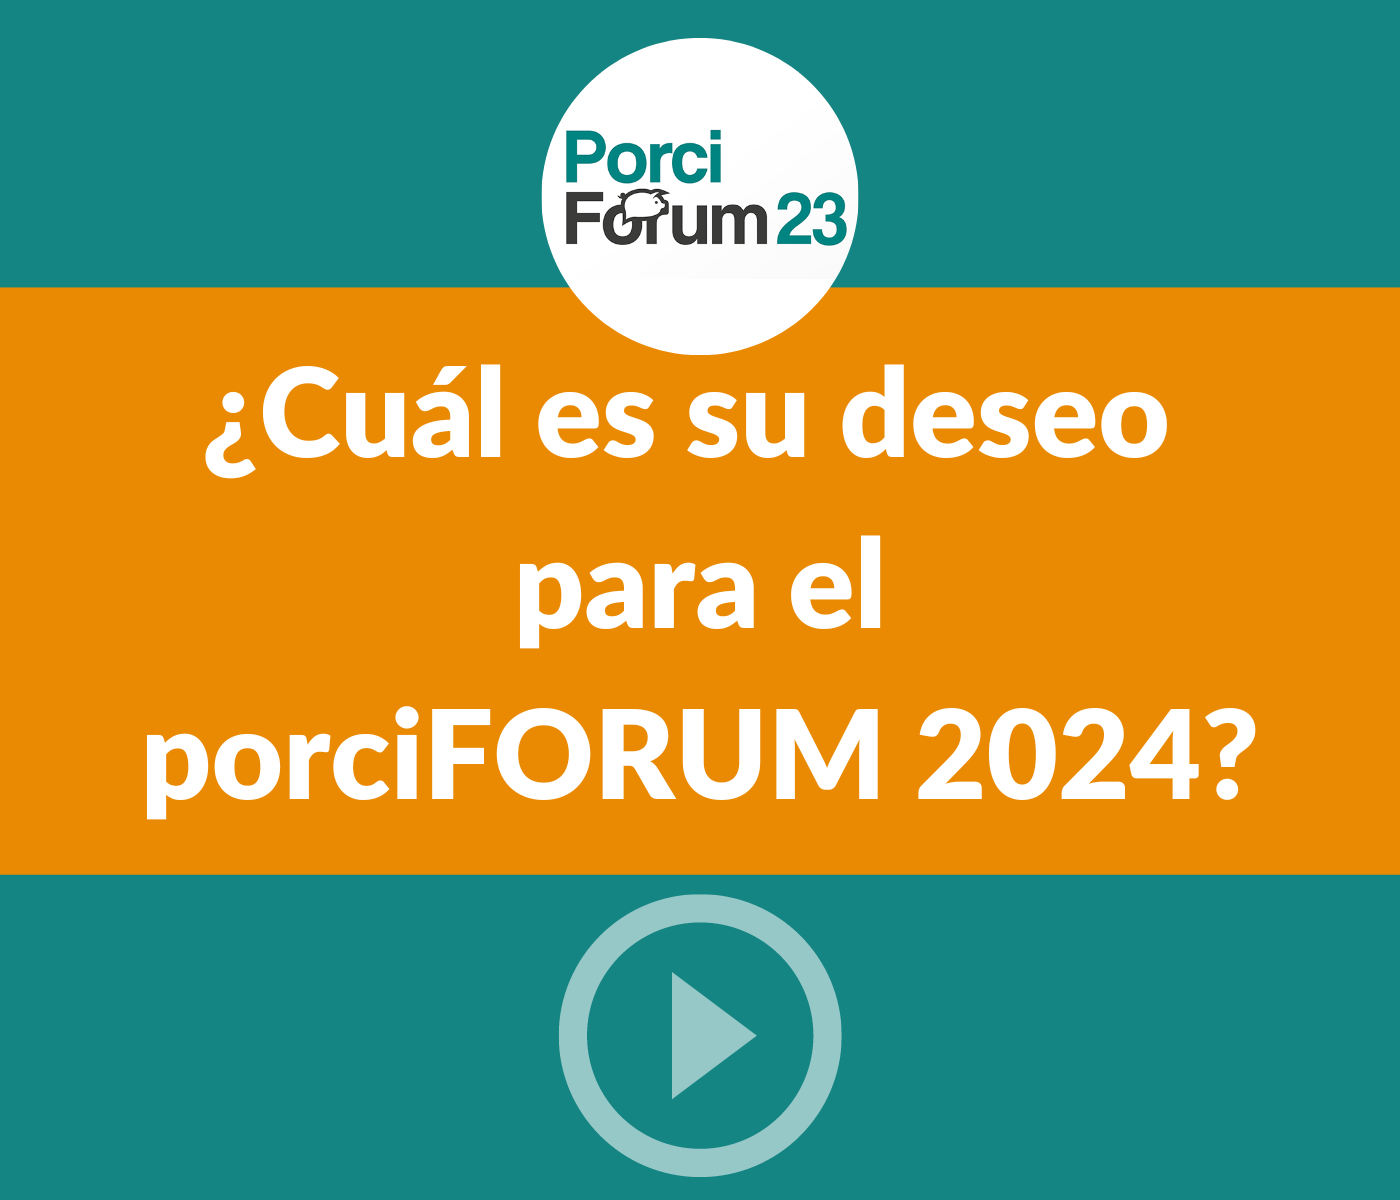 ¿Cuál es su deseo para el porciFORUM 2024?